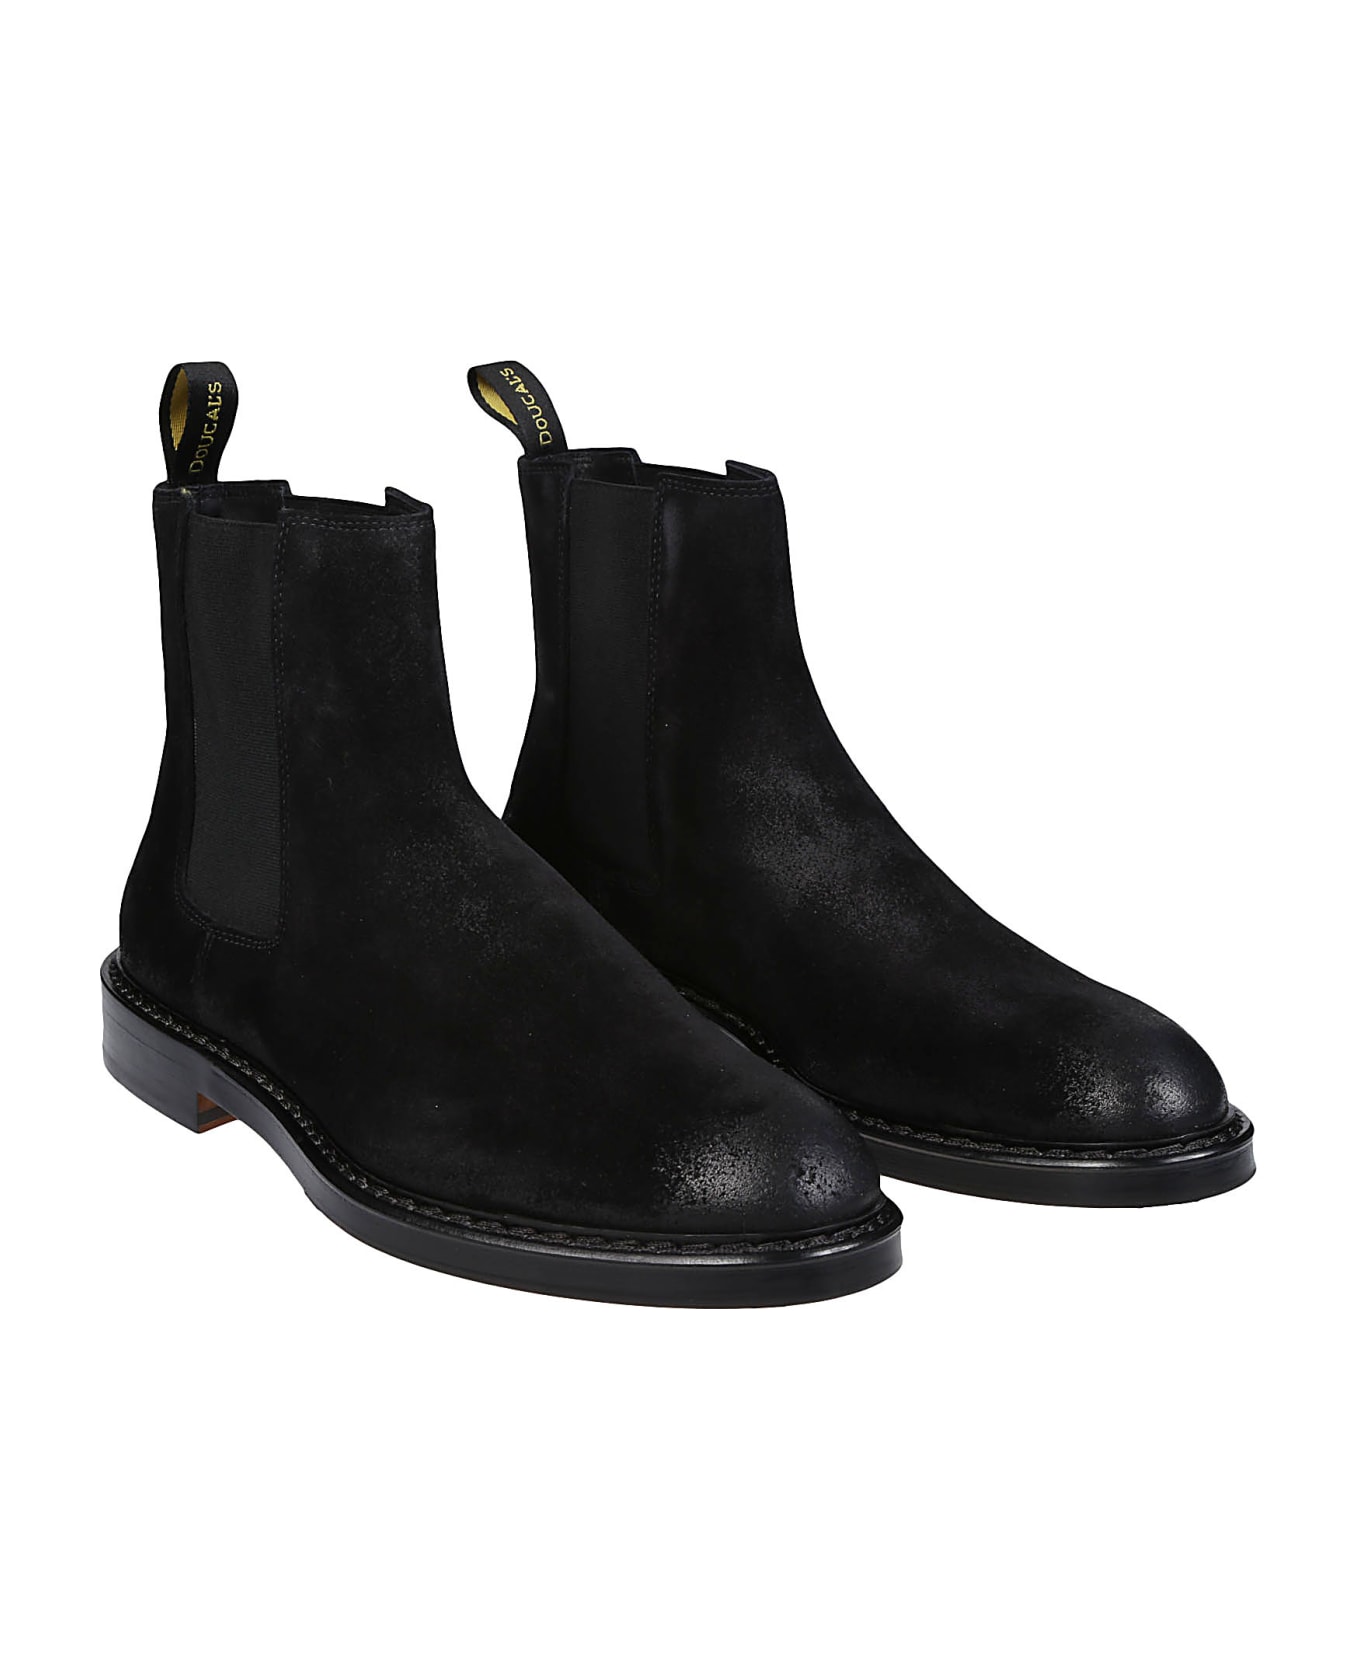 Doucal's Beatles Ankle Boots - Nero/fondo Nero ブーツ